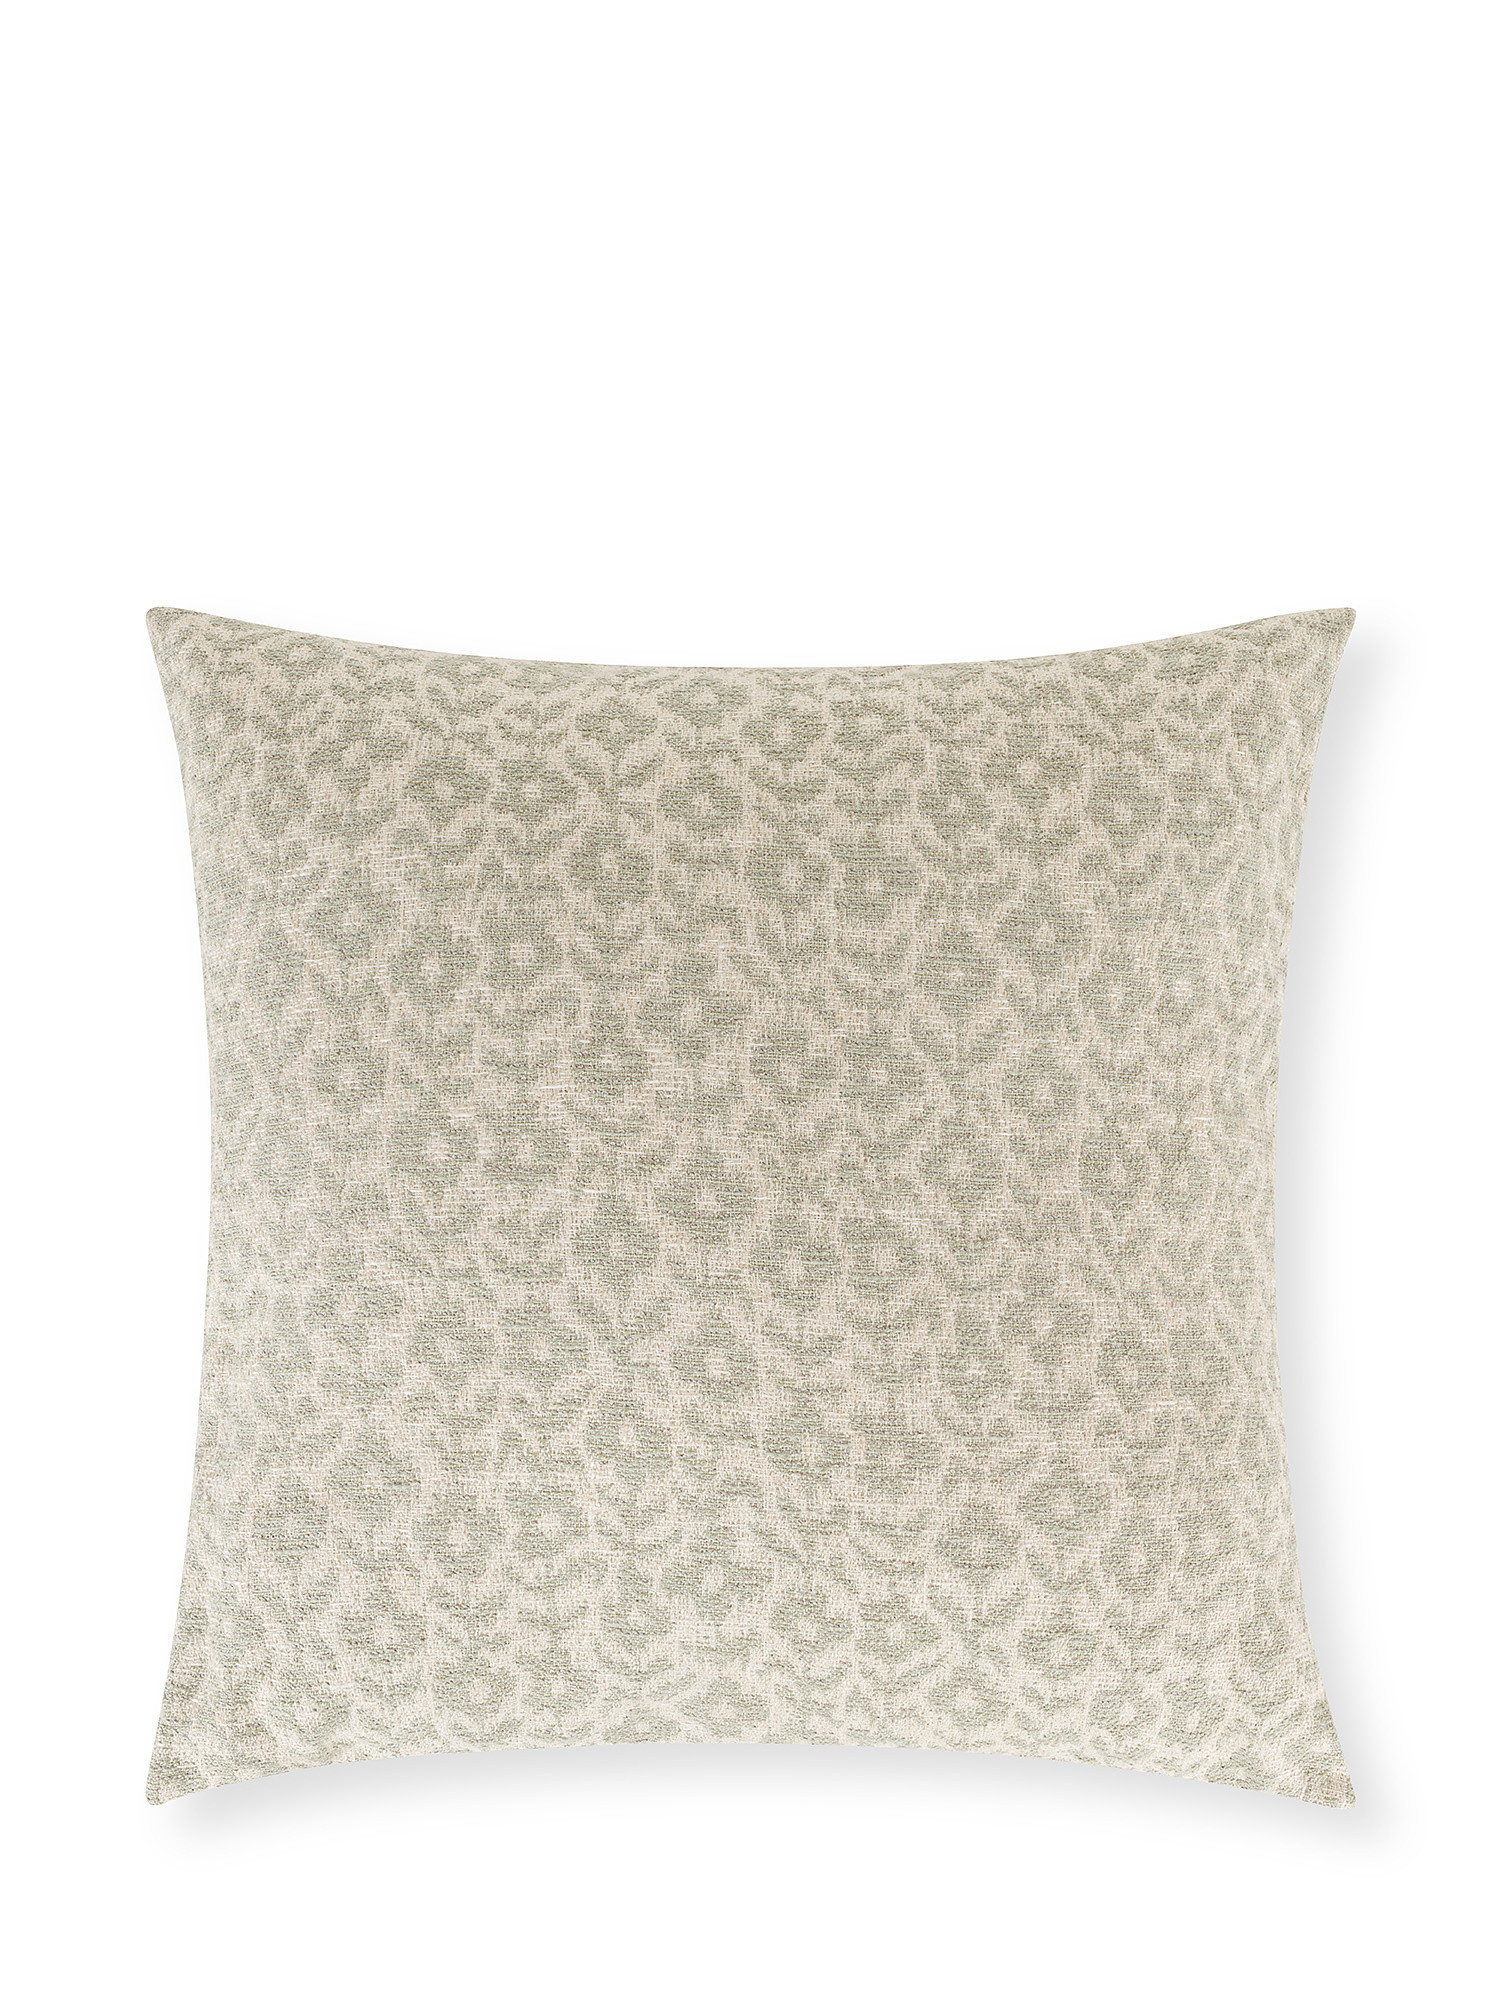 Cuscino misto lino e cotone motivo fiori 50x50cm, Beige, large image number 0